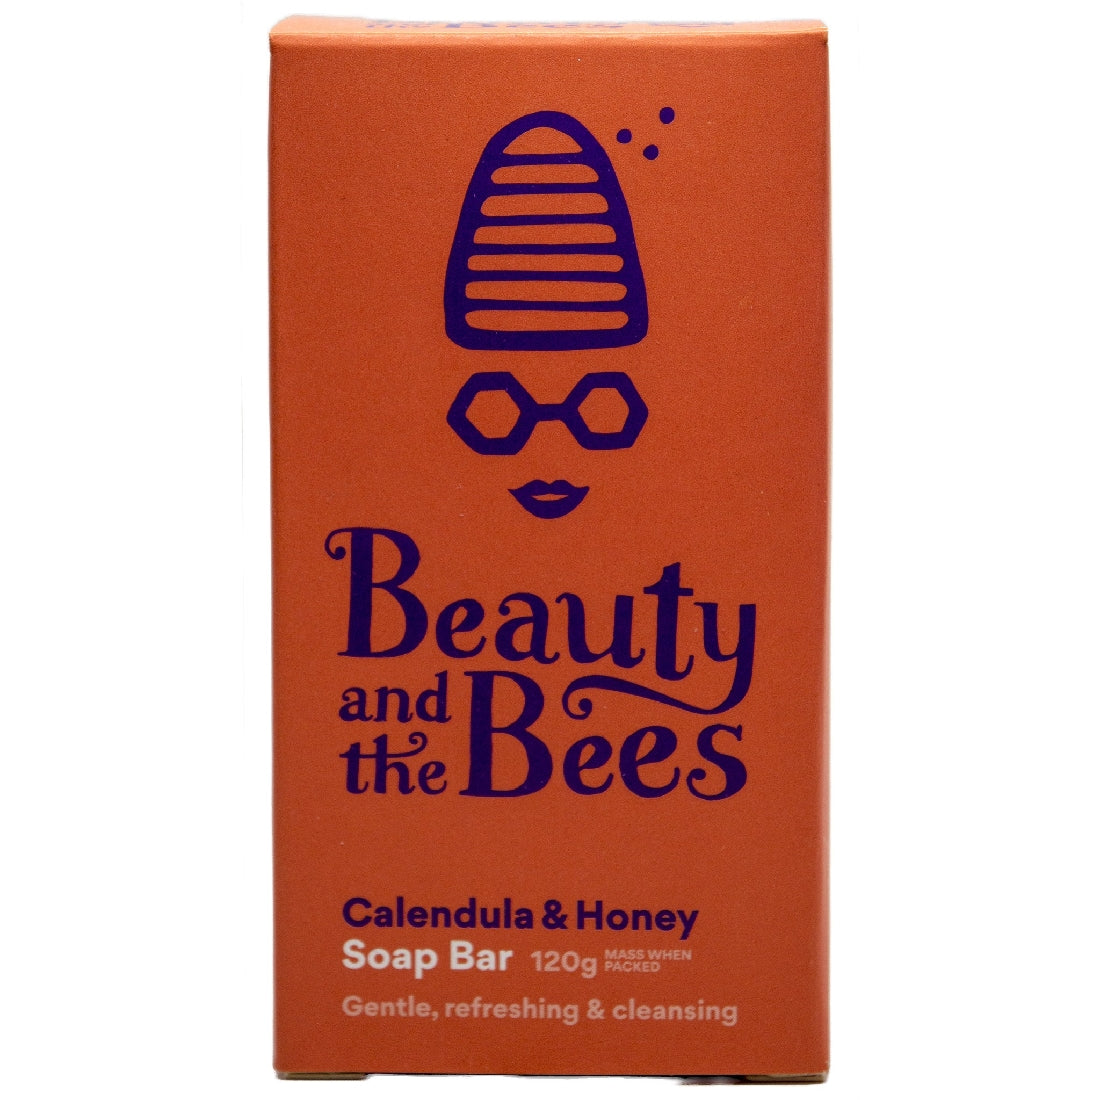 BEAUTY AND THE BEES CALANDULA AND HONEY SOAP BAR 120G